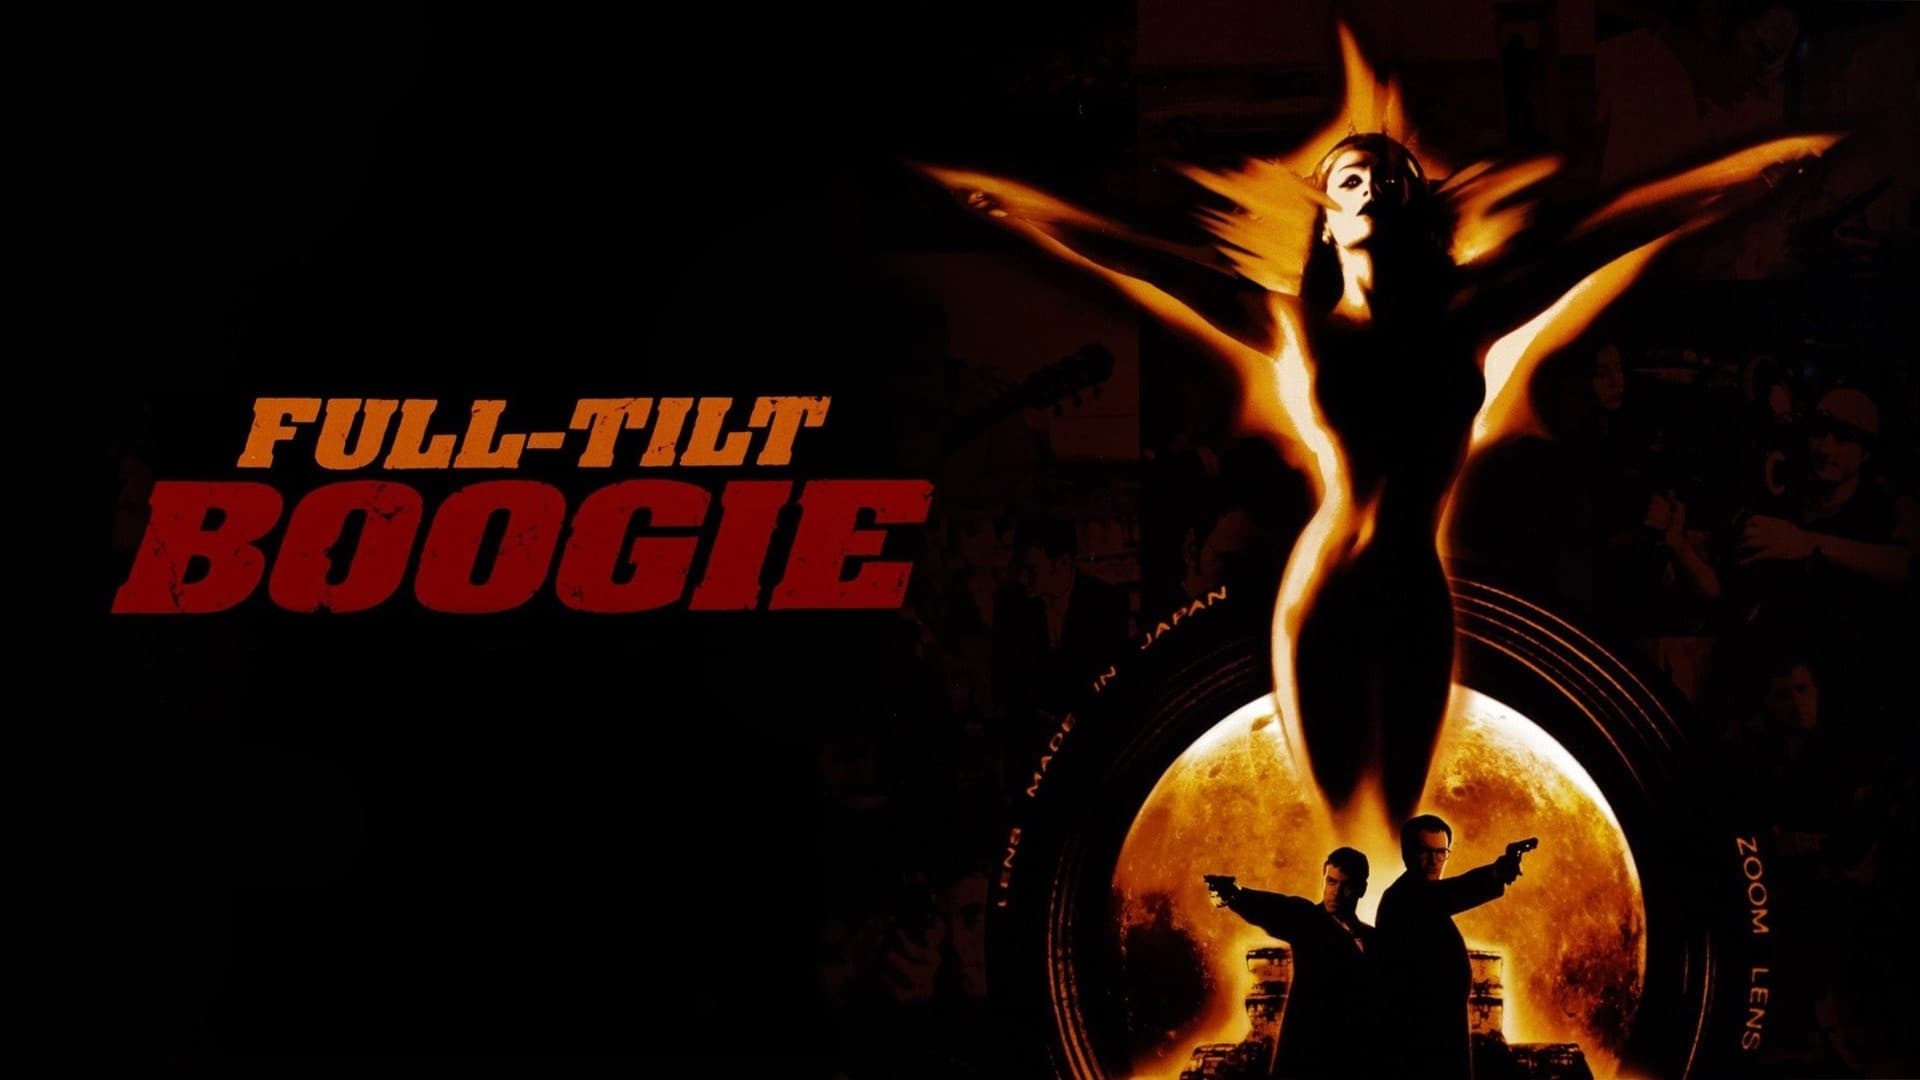 Full Tilt Boogie (1998)